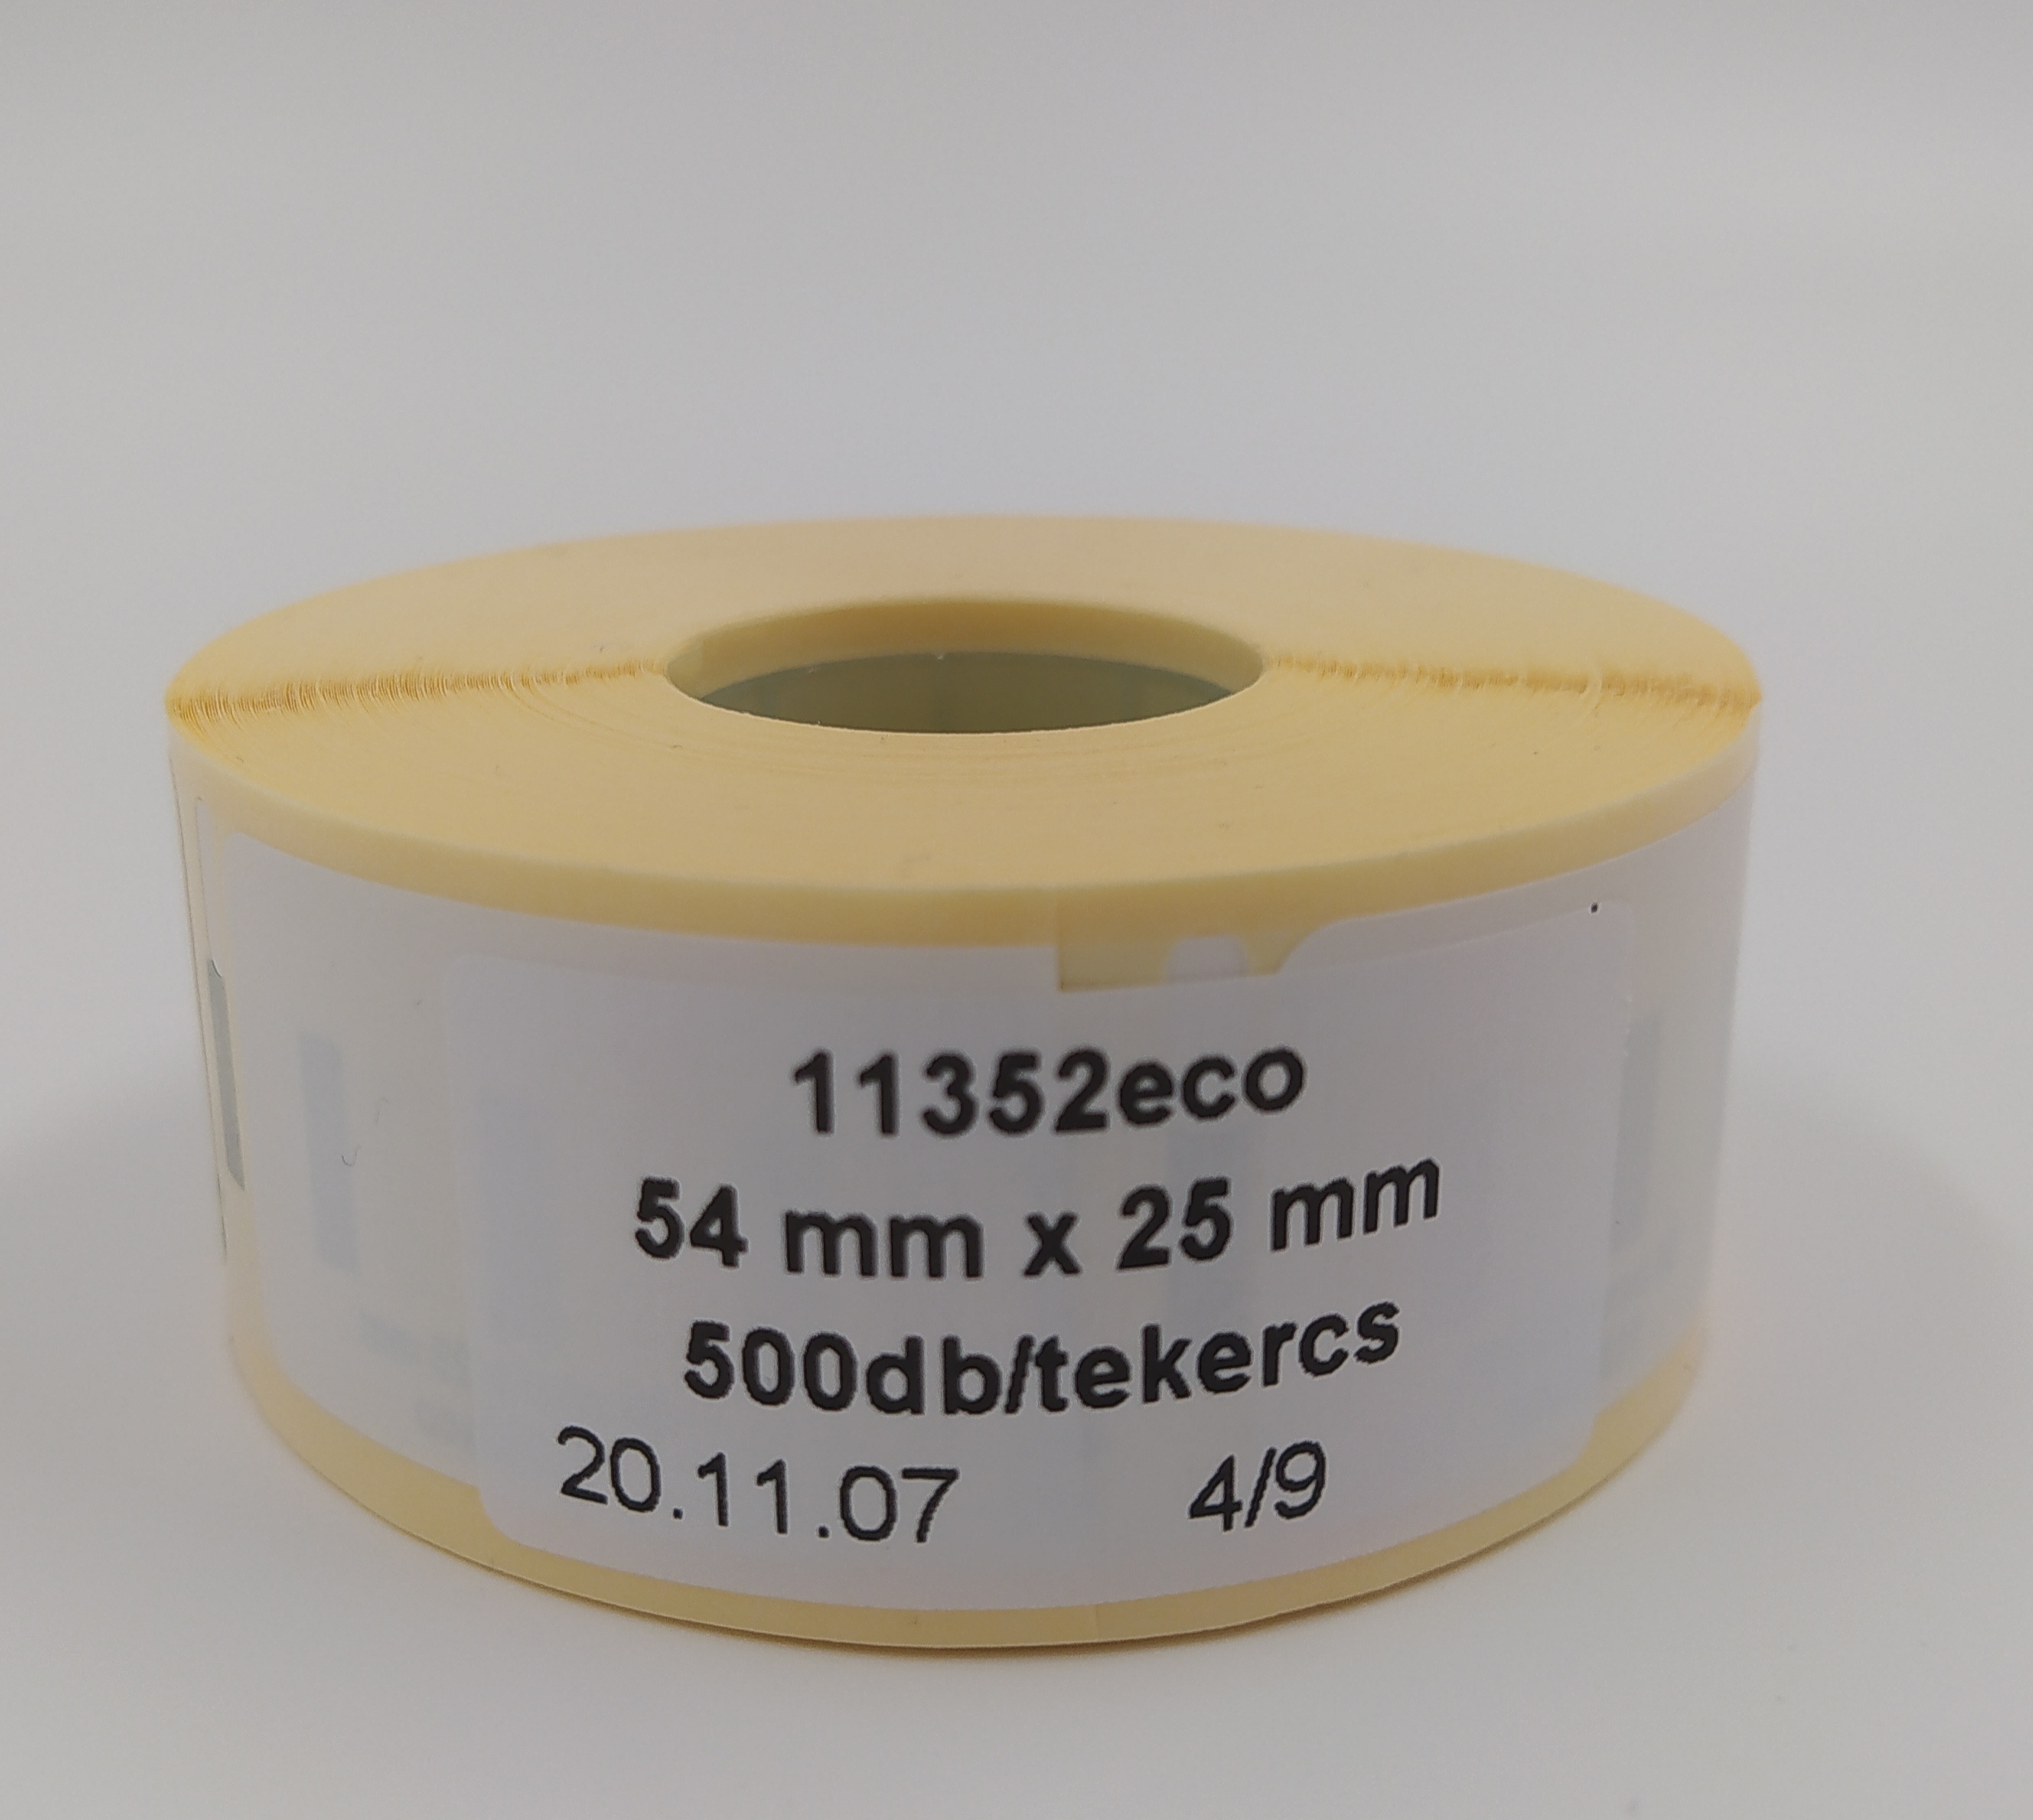 54mmx25mm-es etikettcímke, 500db/tekercs (11352eco)